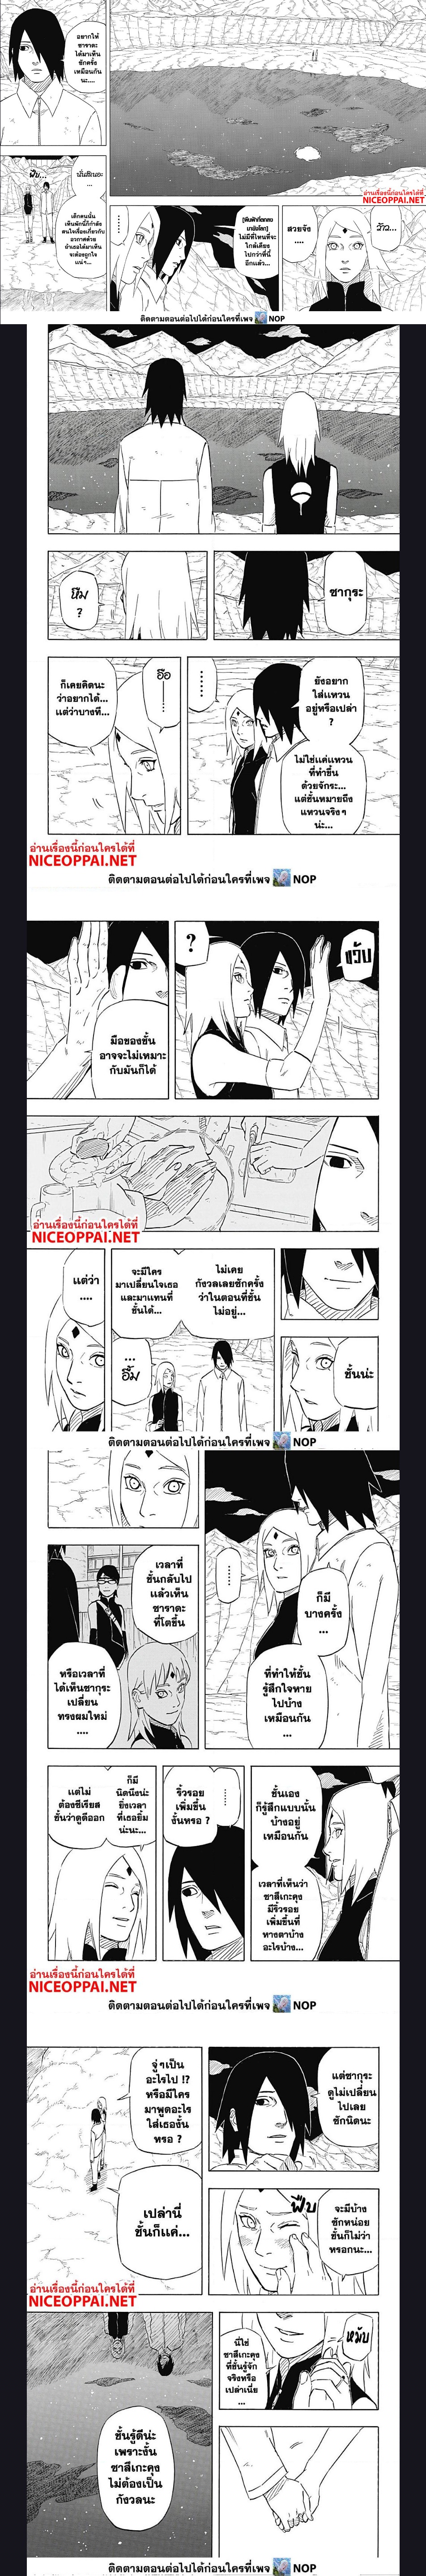 Naruto Sasuke’s Story 6.2 (2)